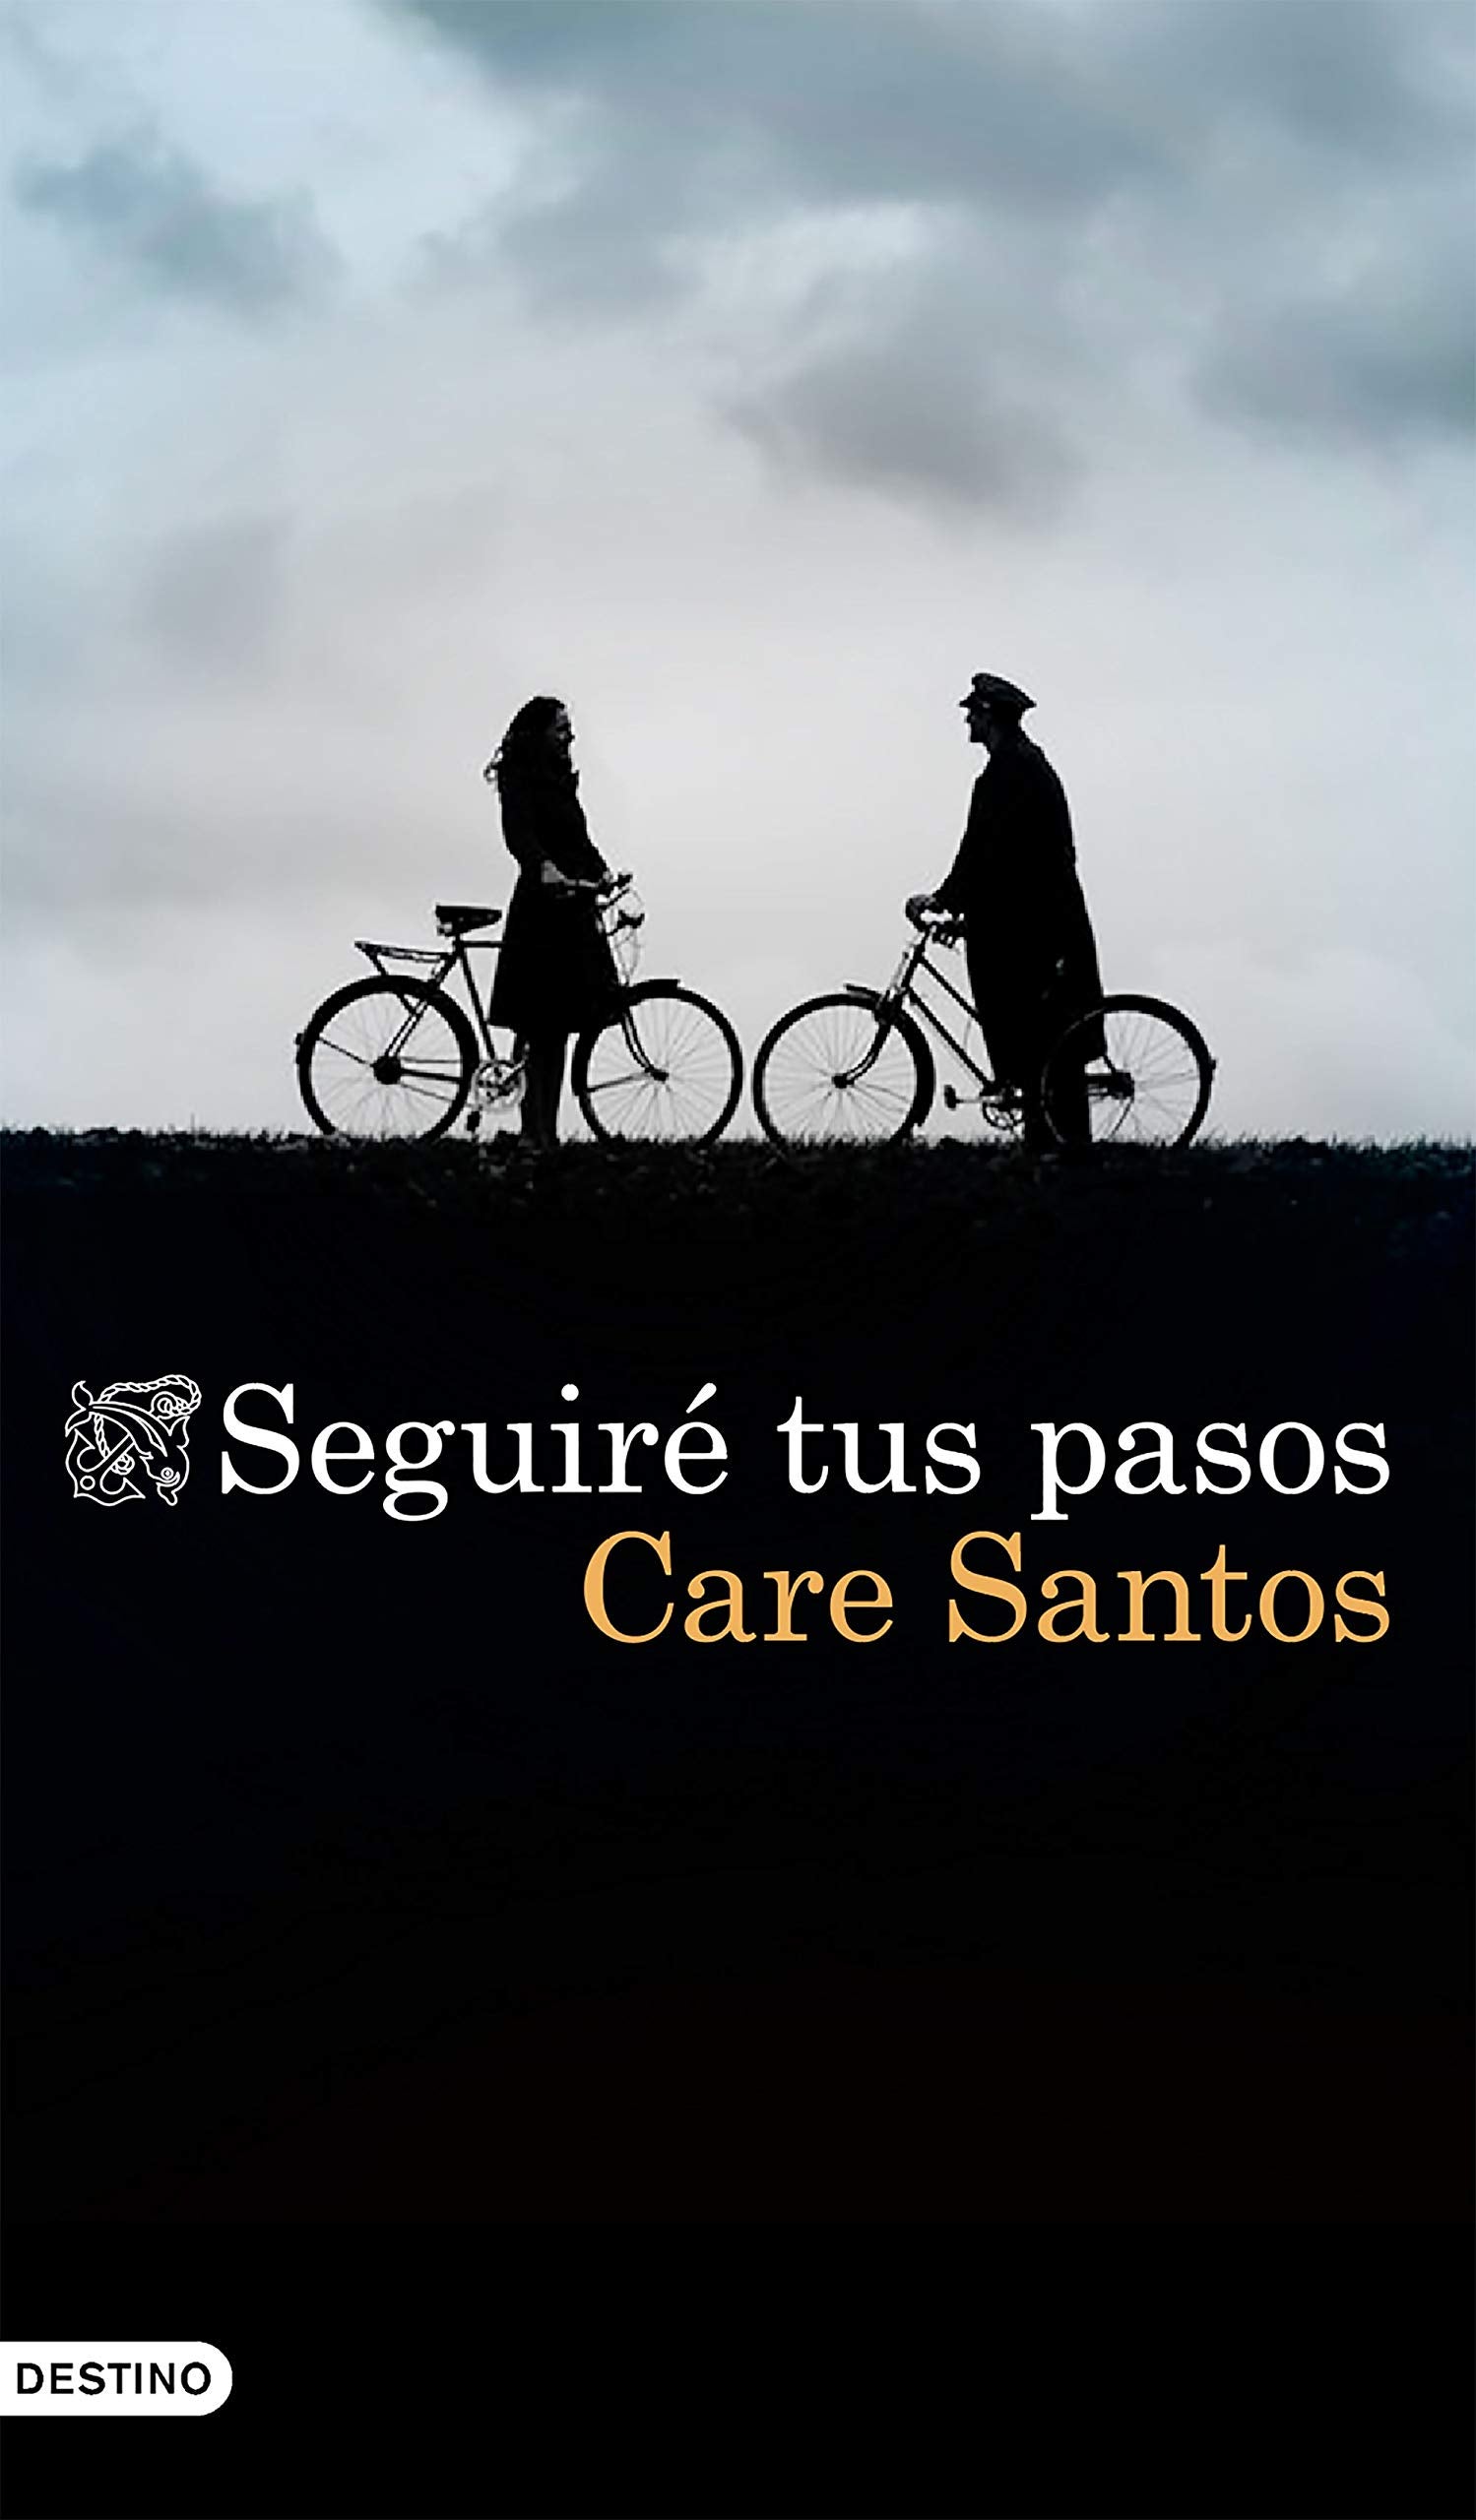 Care Santos 